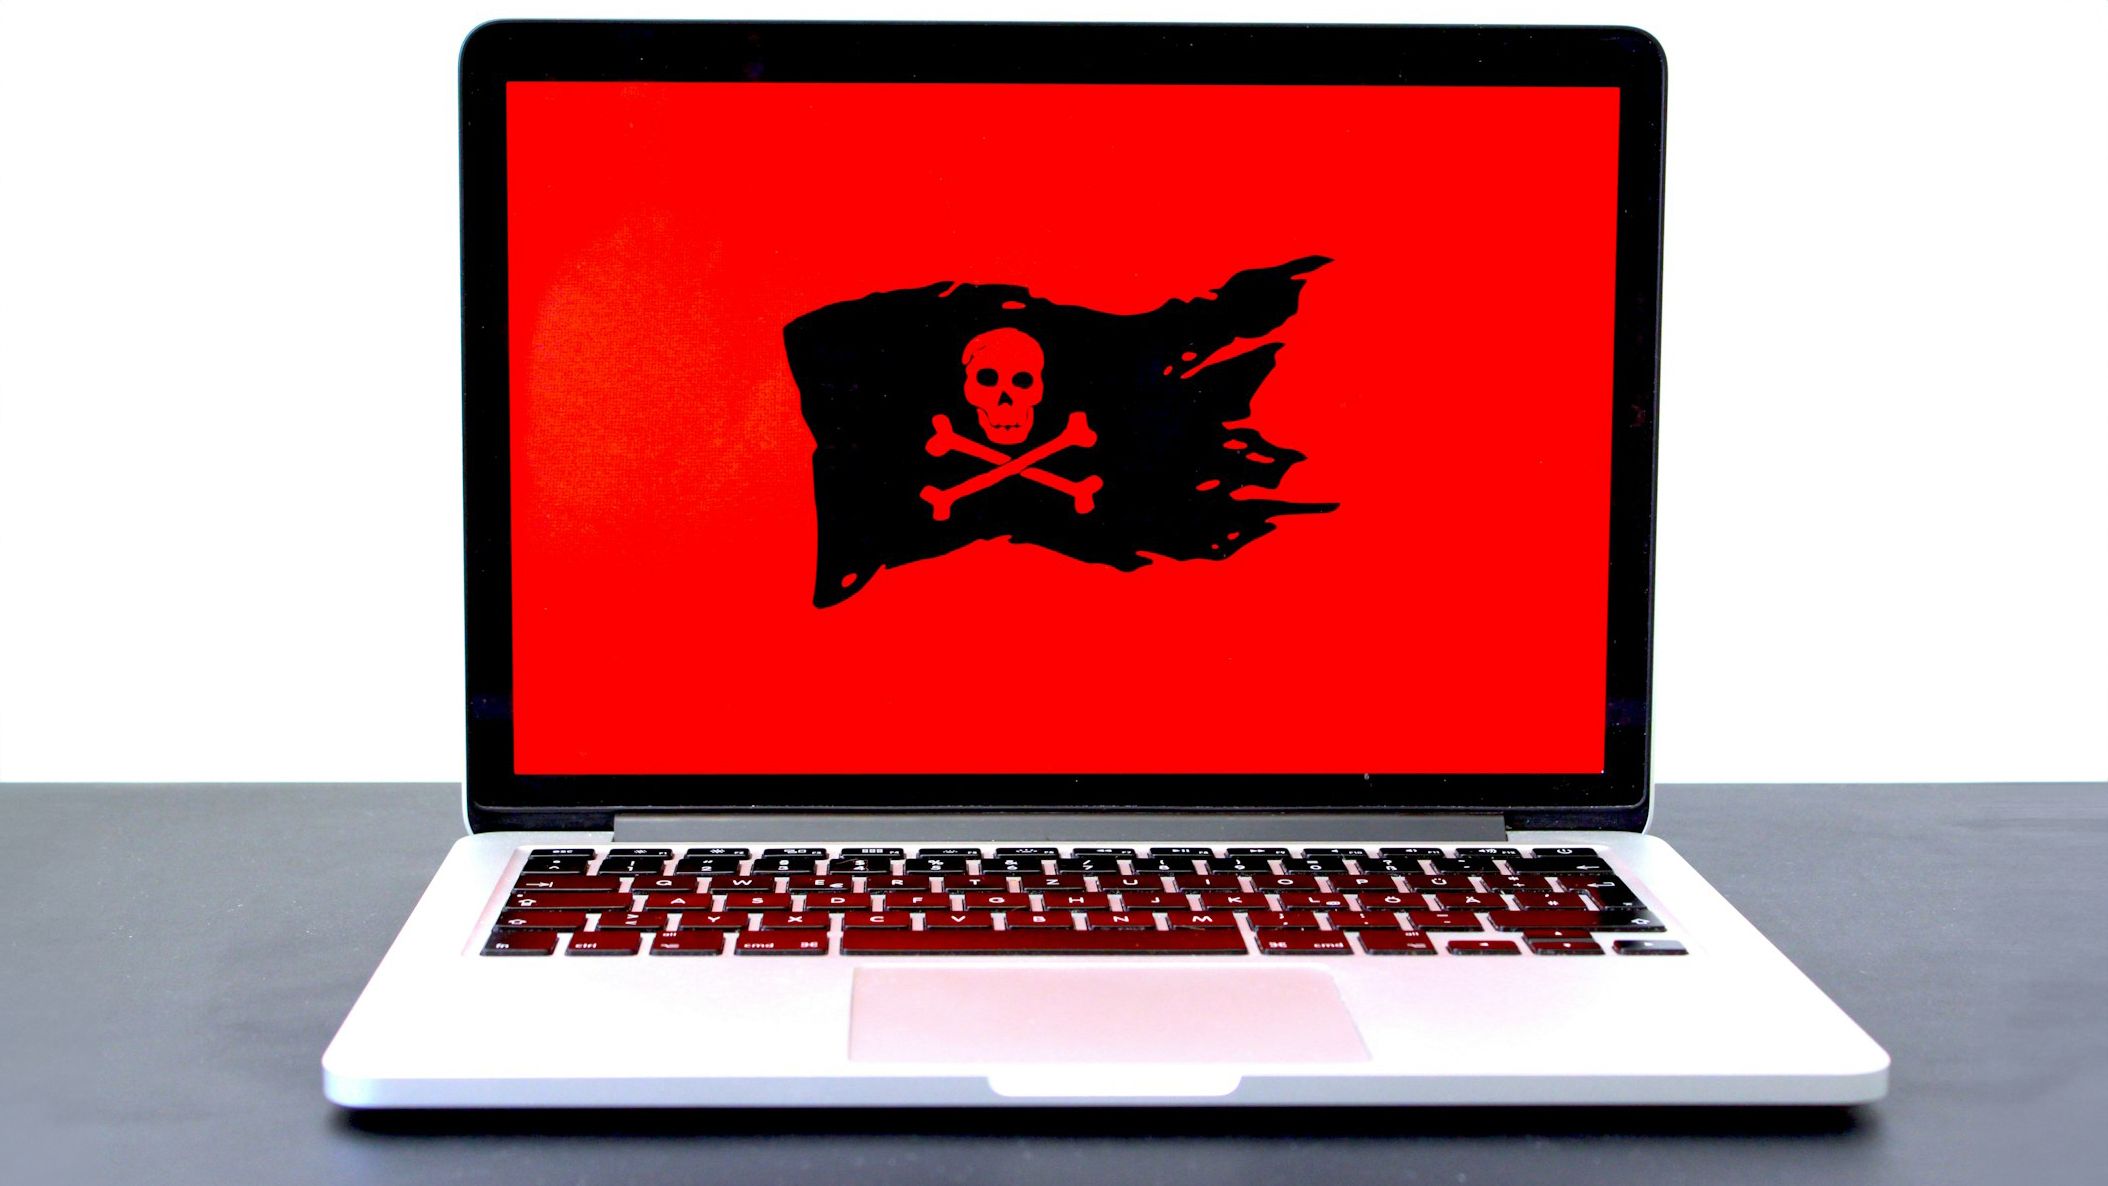 Um laptop sobre uma mesa exibindo uma grande tela vermelha com um símbolo de bandeira preta de pirata, indicando um potencial ransomware ou ameaça à segurança cibernética.